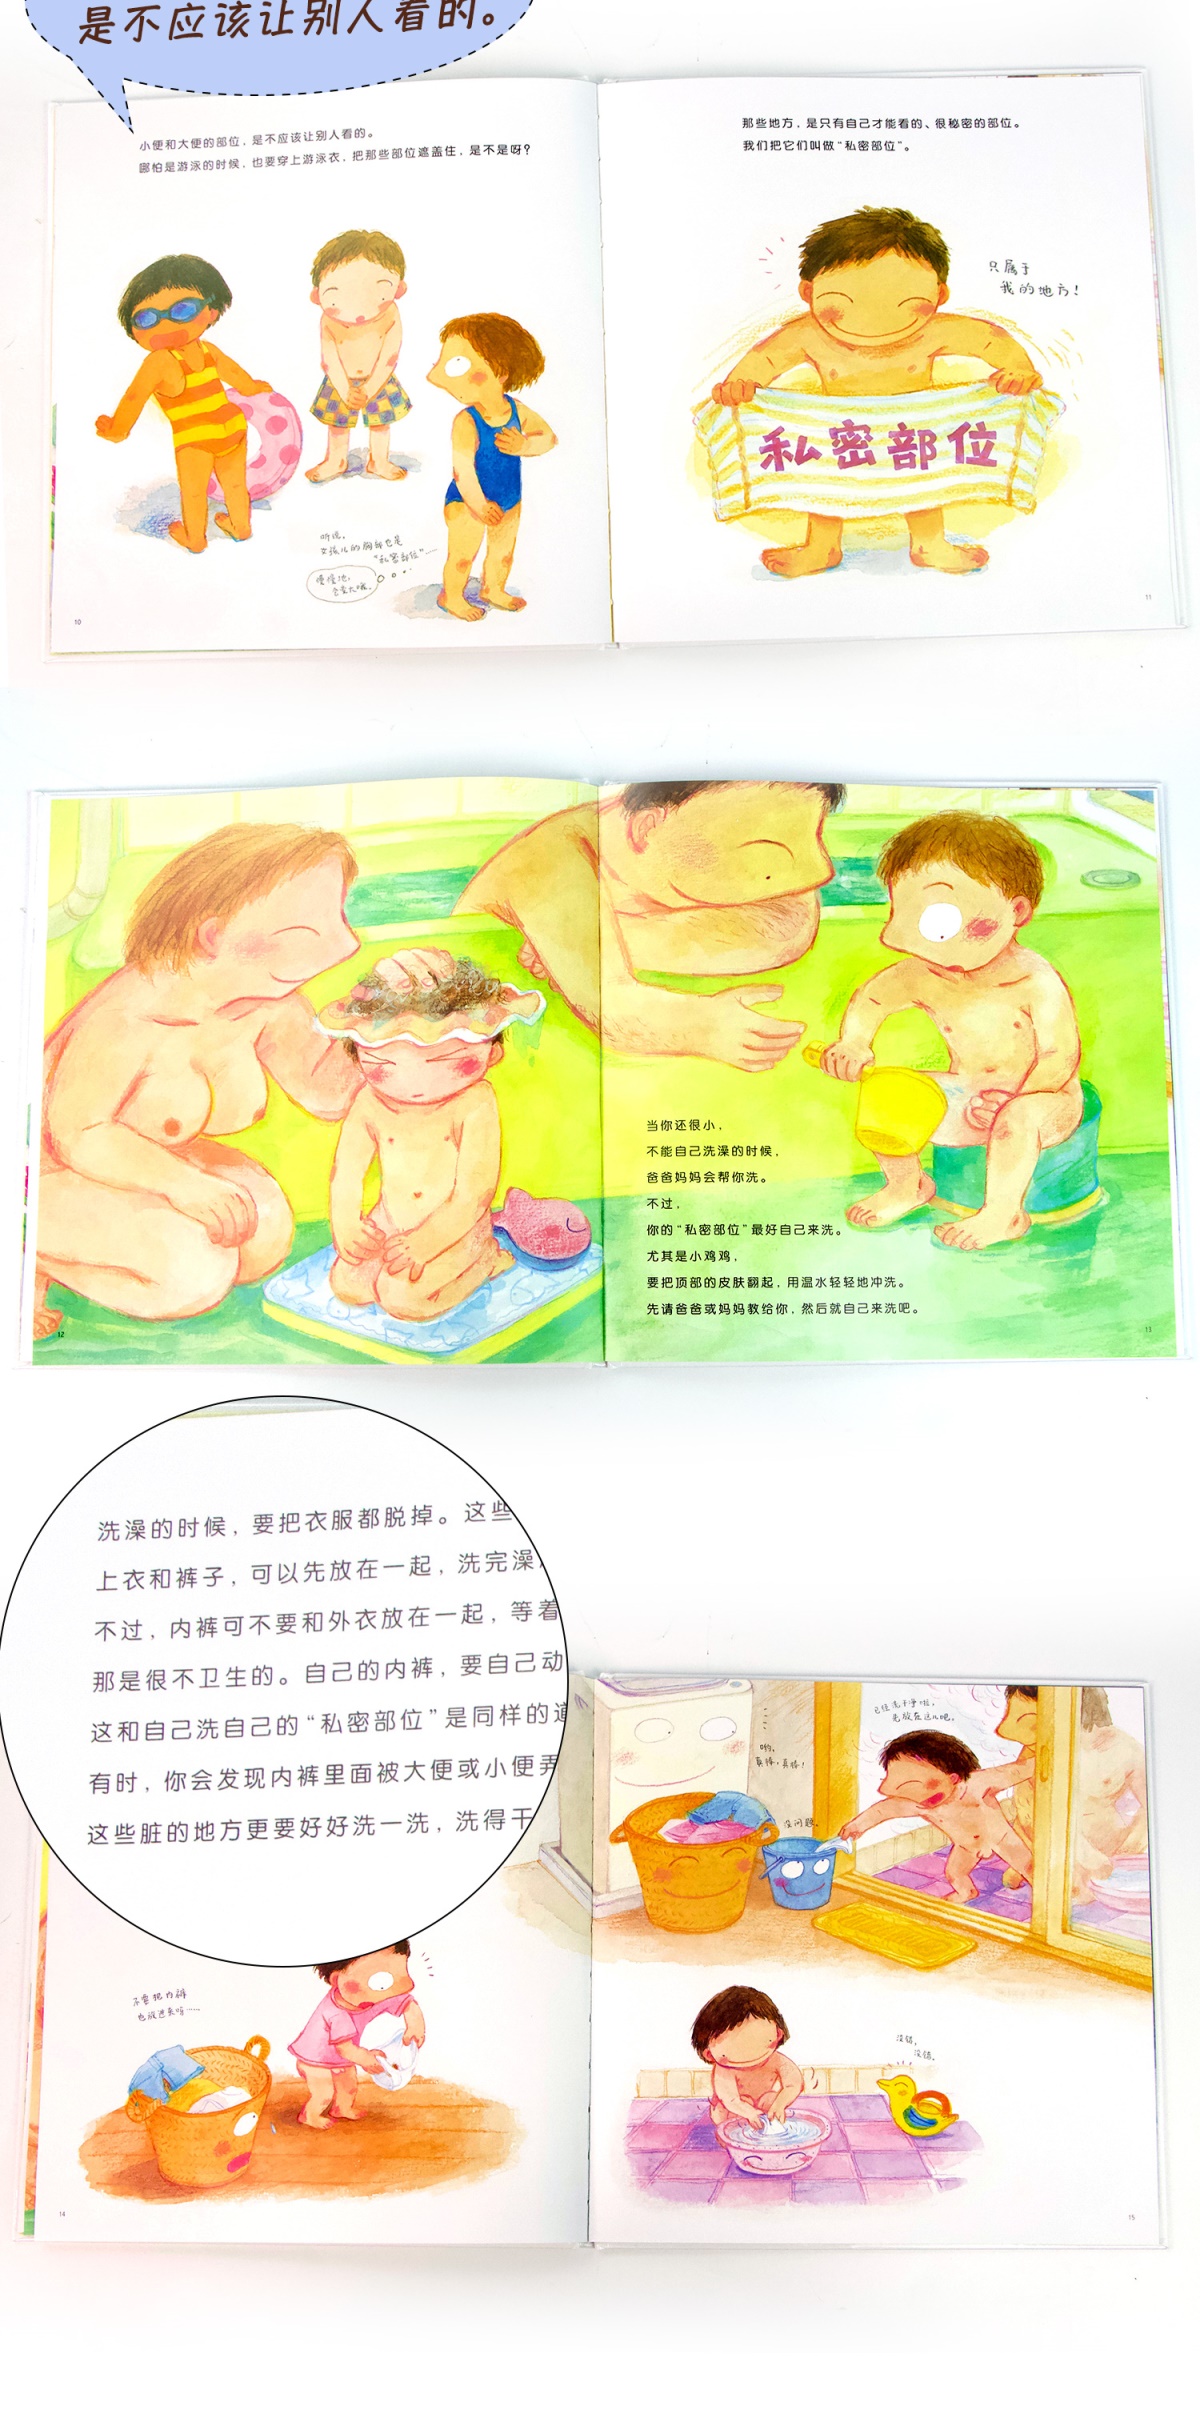 小鸡鸡的故事精蒲蒲兰儿童绘本漫画0356789少低幼性启蒙教育儿童文学